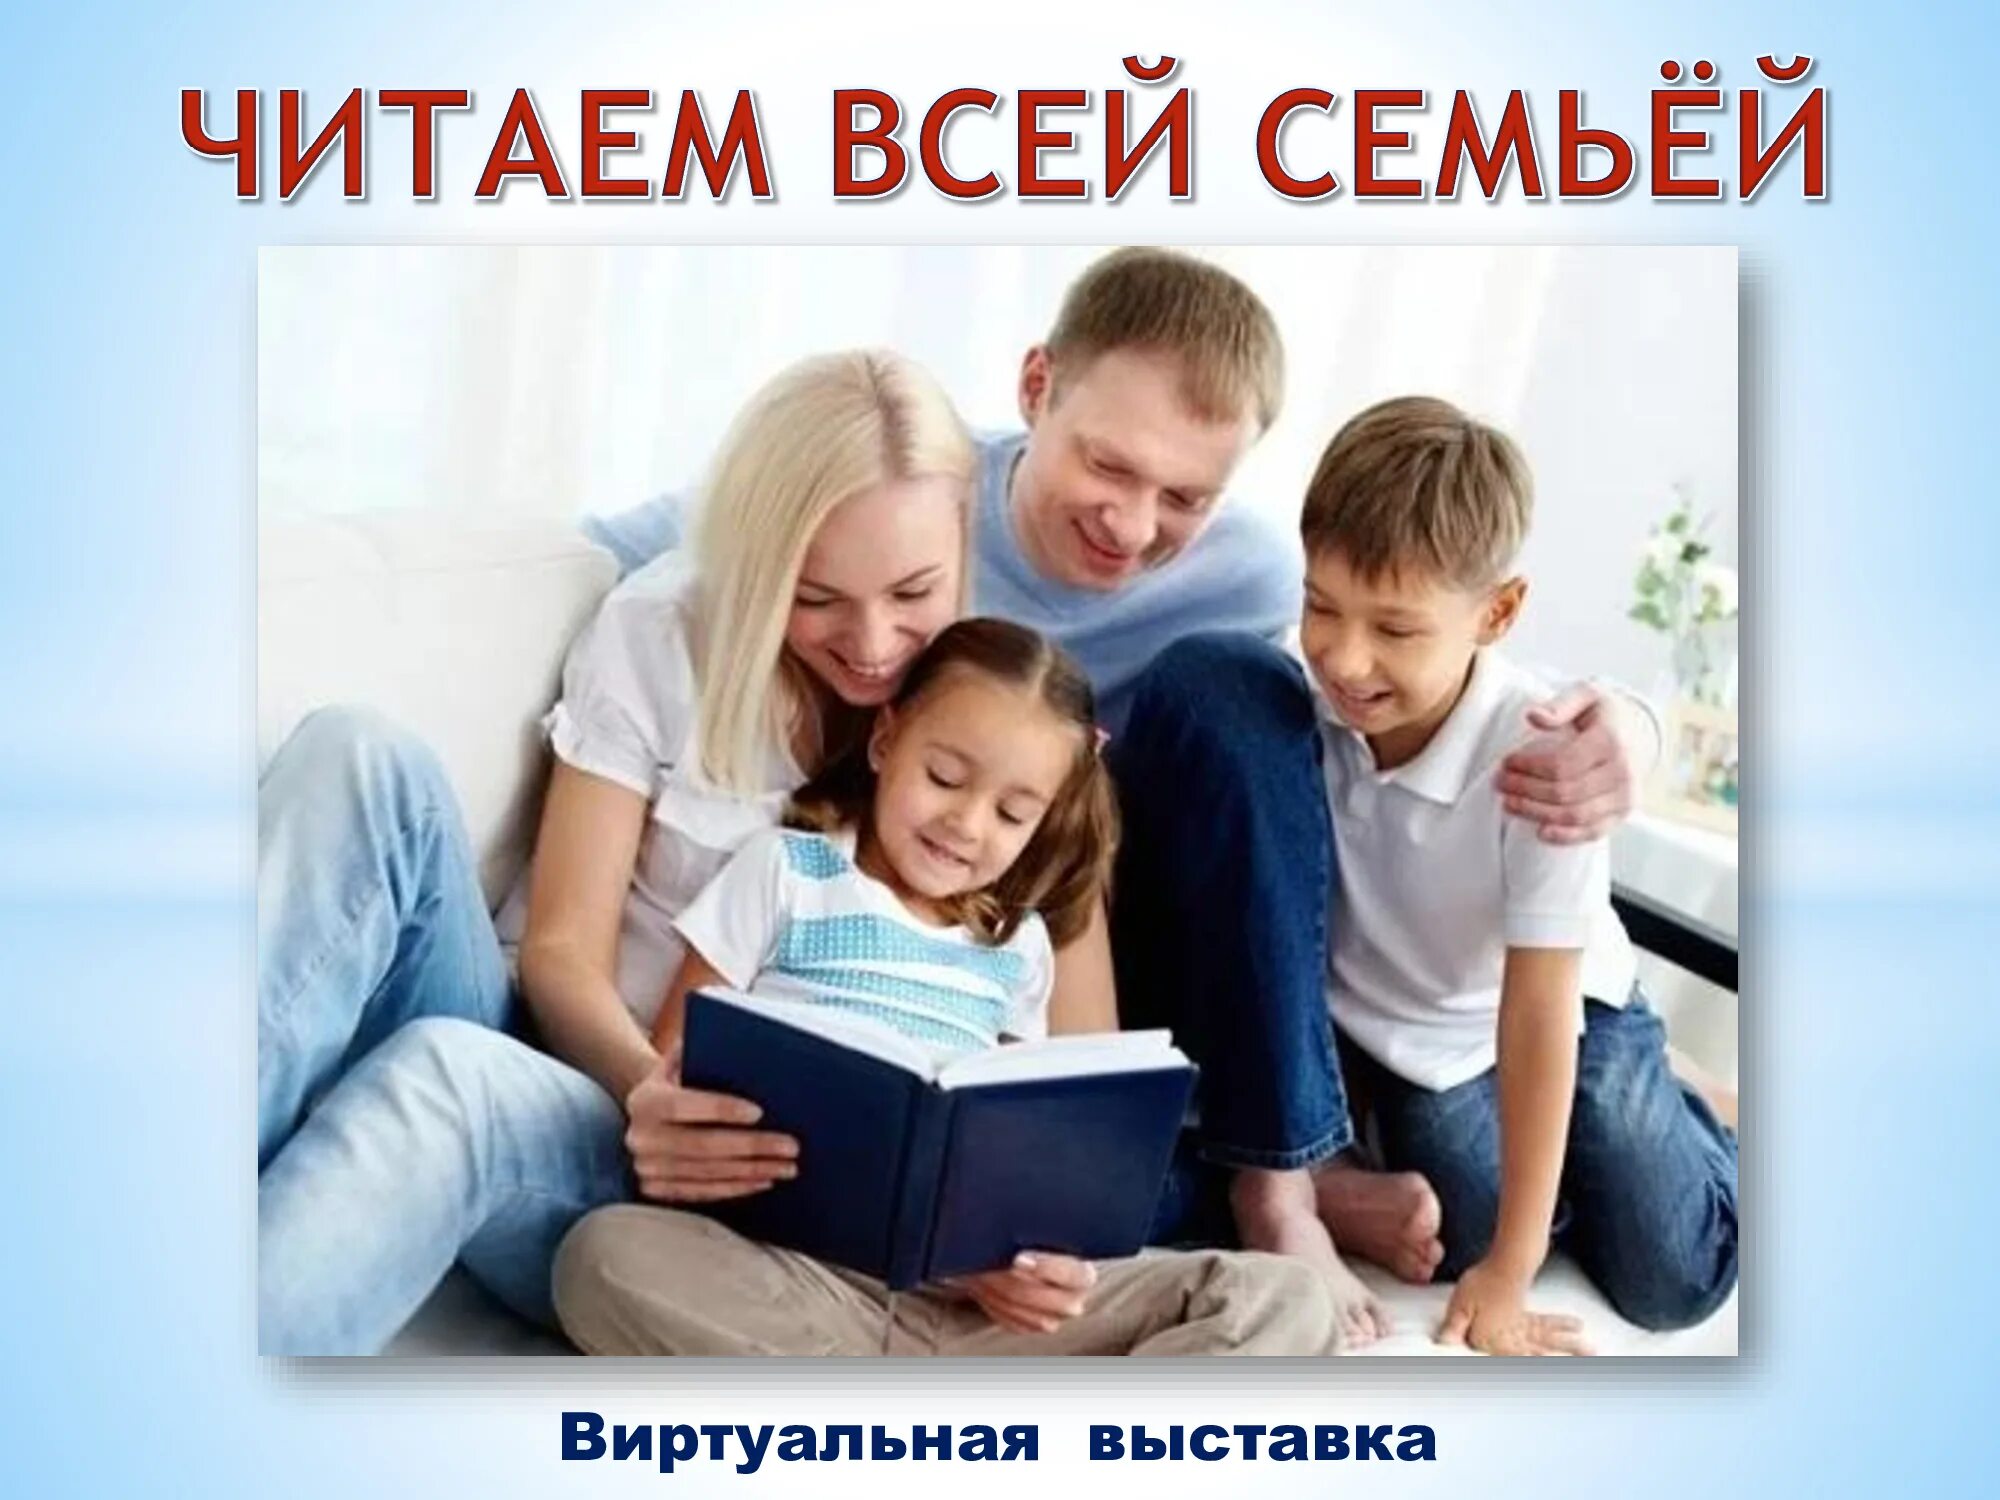 Статья читающая семья. Семья читает книгу. Читаем всей семьей. Чтение в семье. Чтение детей с родителями.